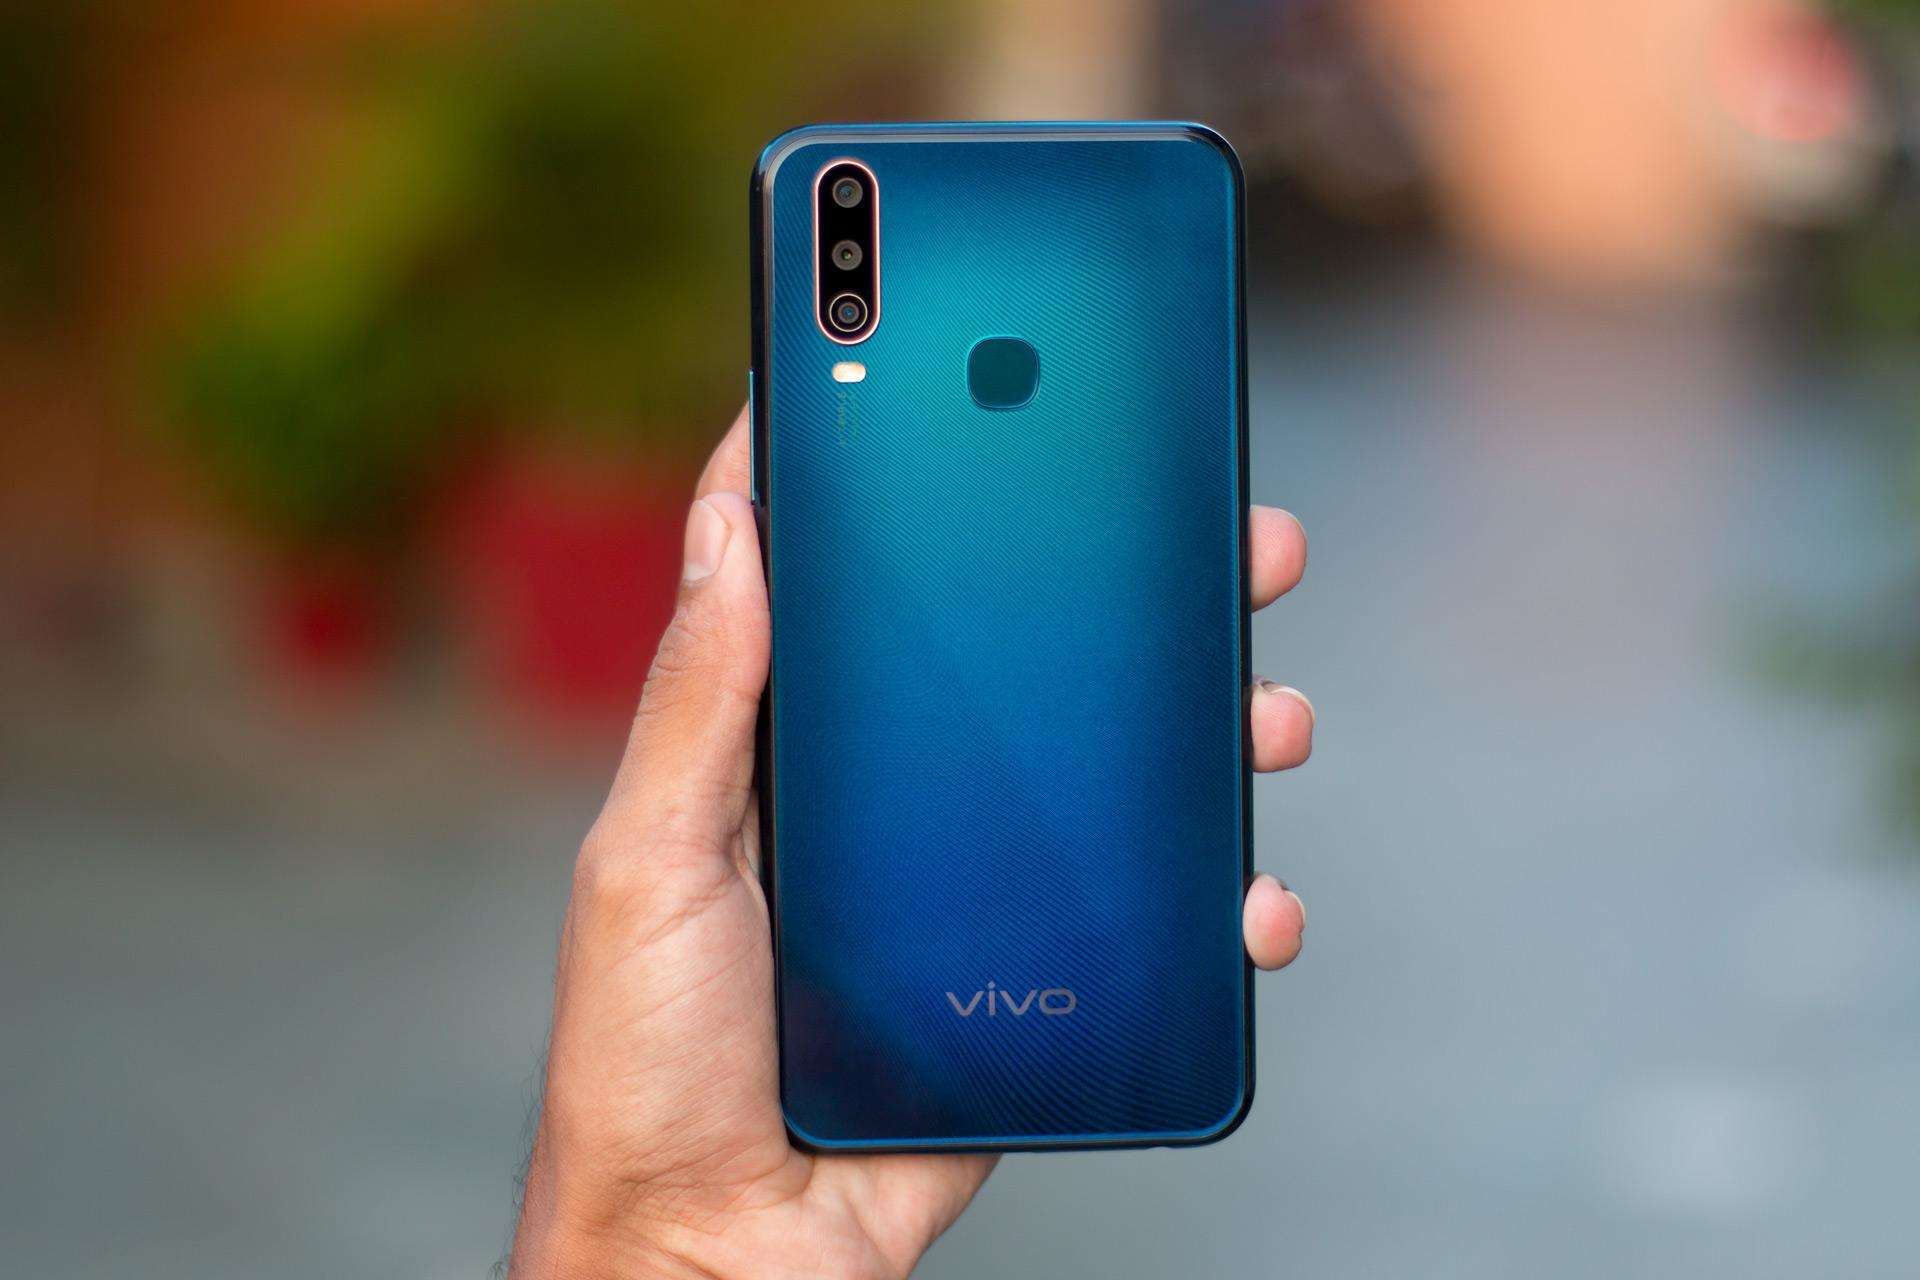 Vivo का फोन आता है 10,999 रूपये में और इसमें दिया गया है ट्रिपल कैमरा सेटअप